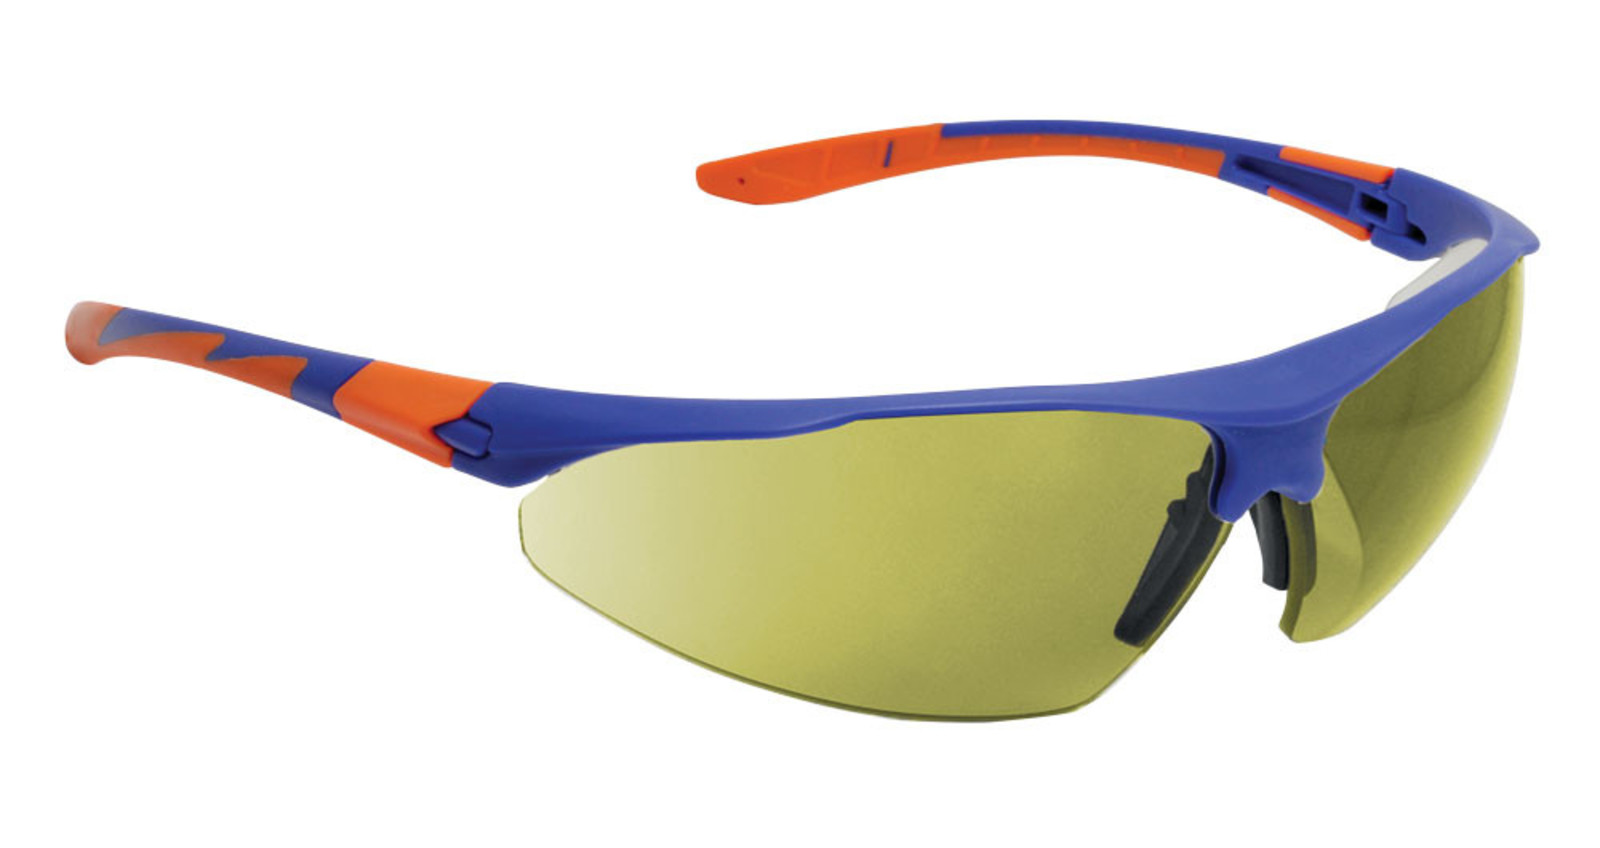 Ochranné okuliare Stealth 9000 - farba: žltá